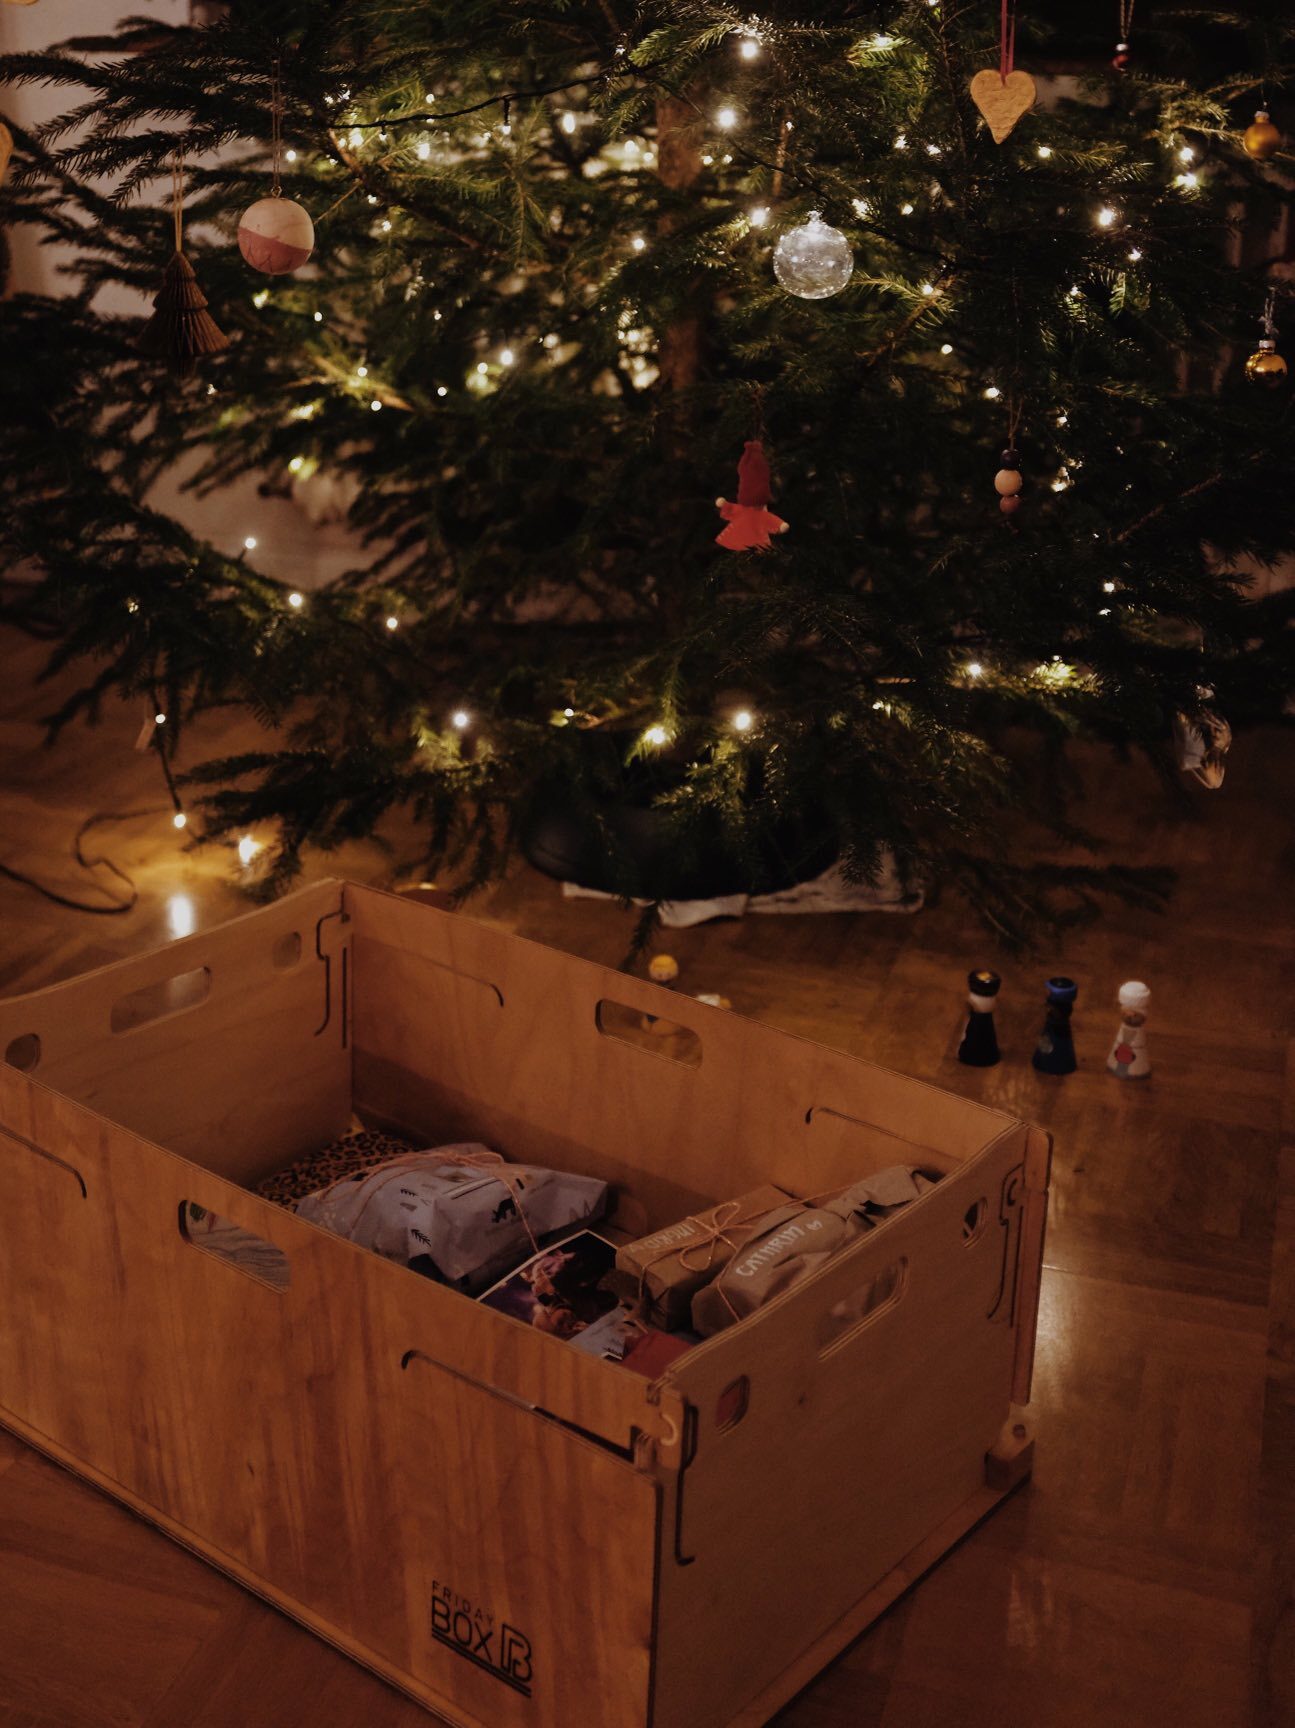 FridayBOX mit Geschenken gefüllt vor einem Weihnachtsbaum